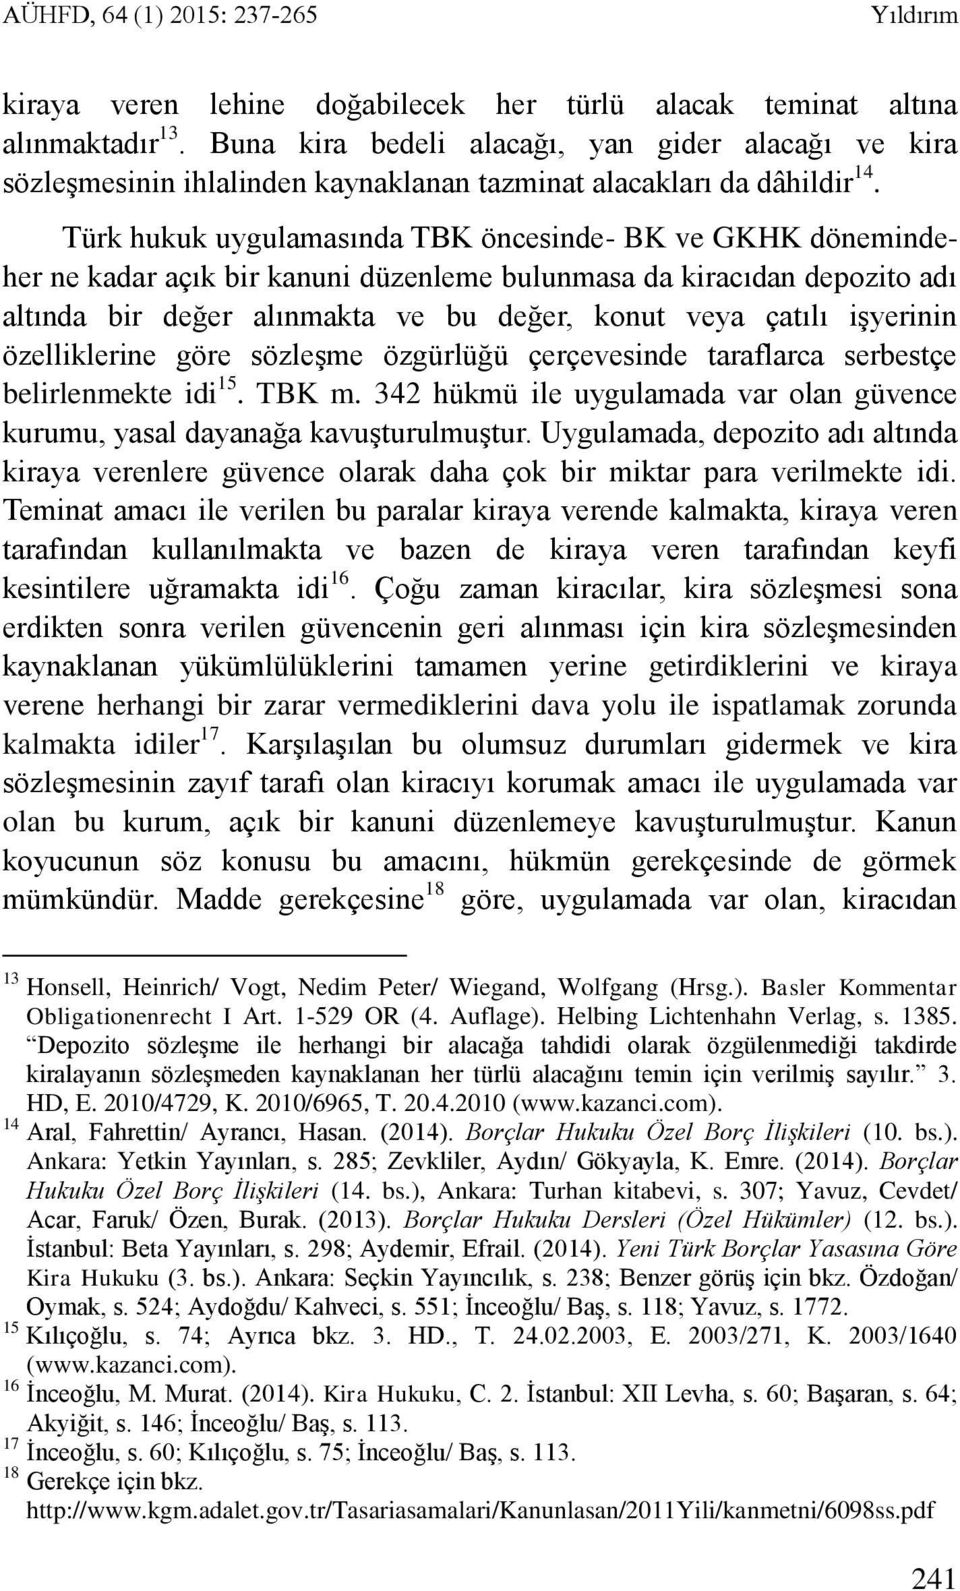 Türk hukuk uygulamasında TBK öncesinde- BK ve GKHK dönemindeher ne kadar açık bir kanuni düzenleme bulunmasa da kiracıdan depozito adı altında bir değer alınmakta ve bu değer, konut veya çatılı